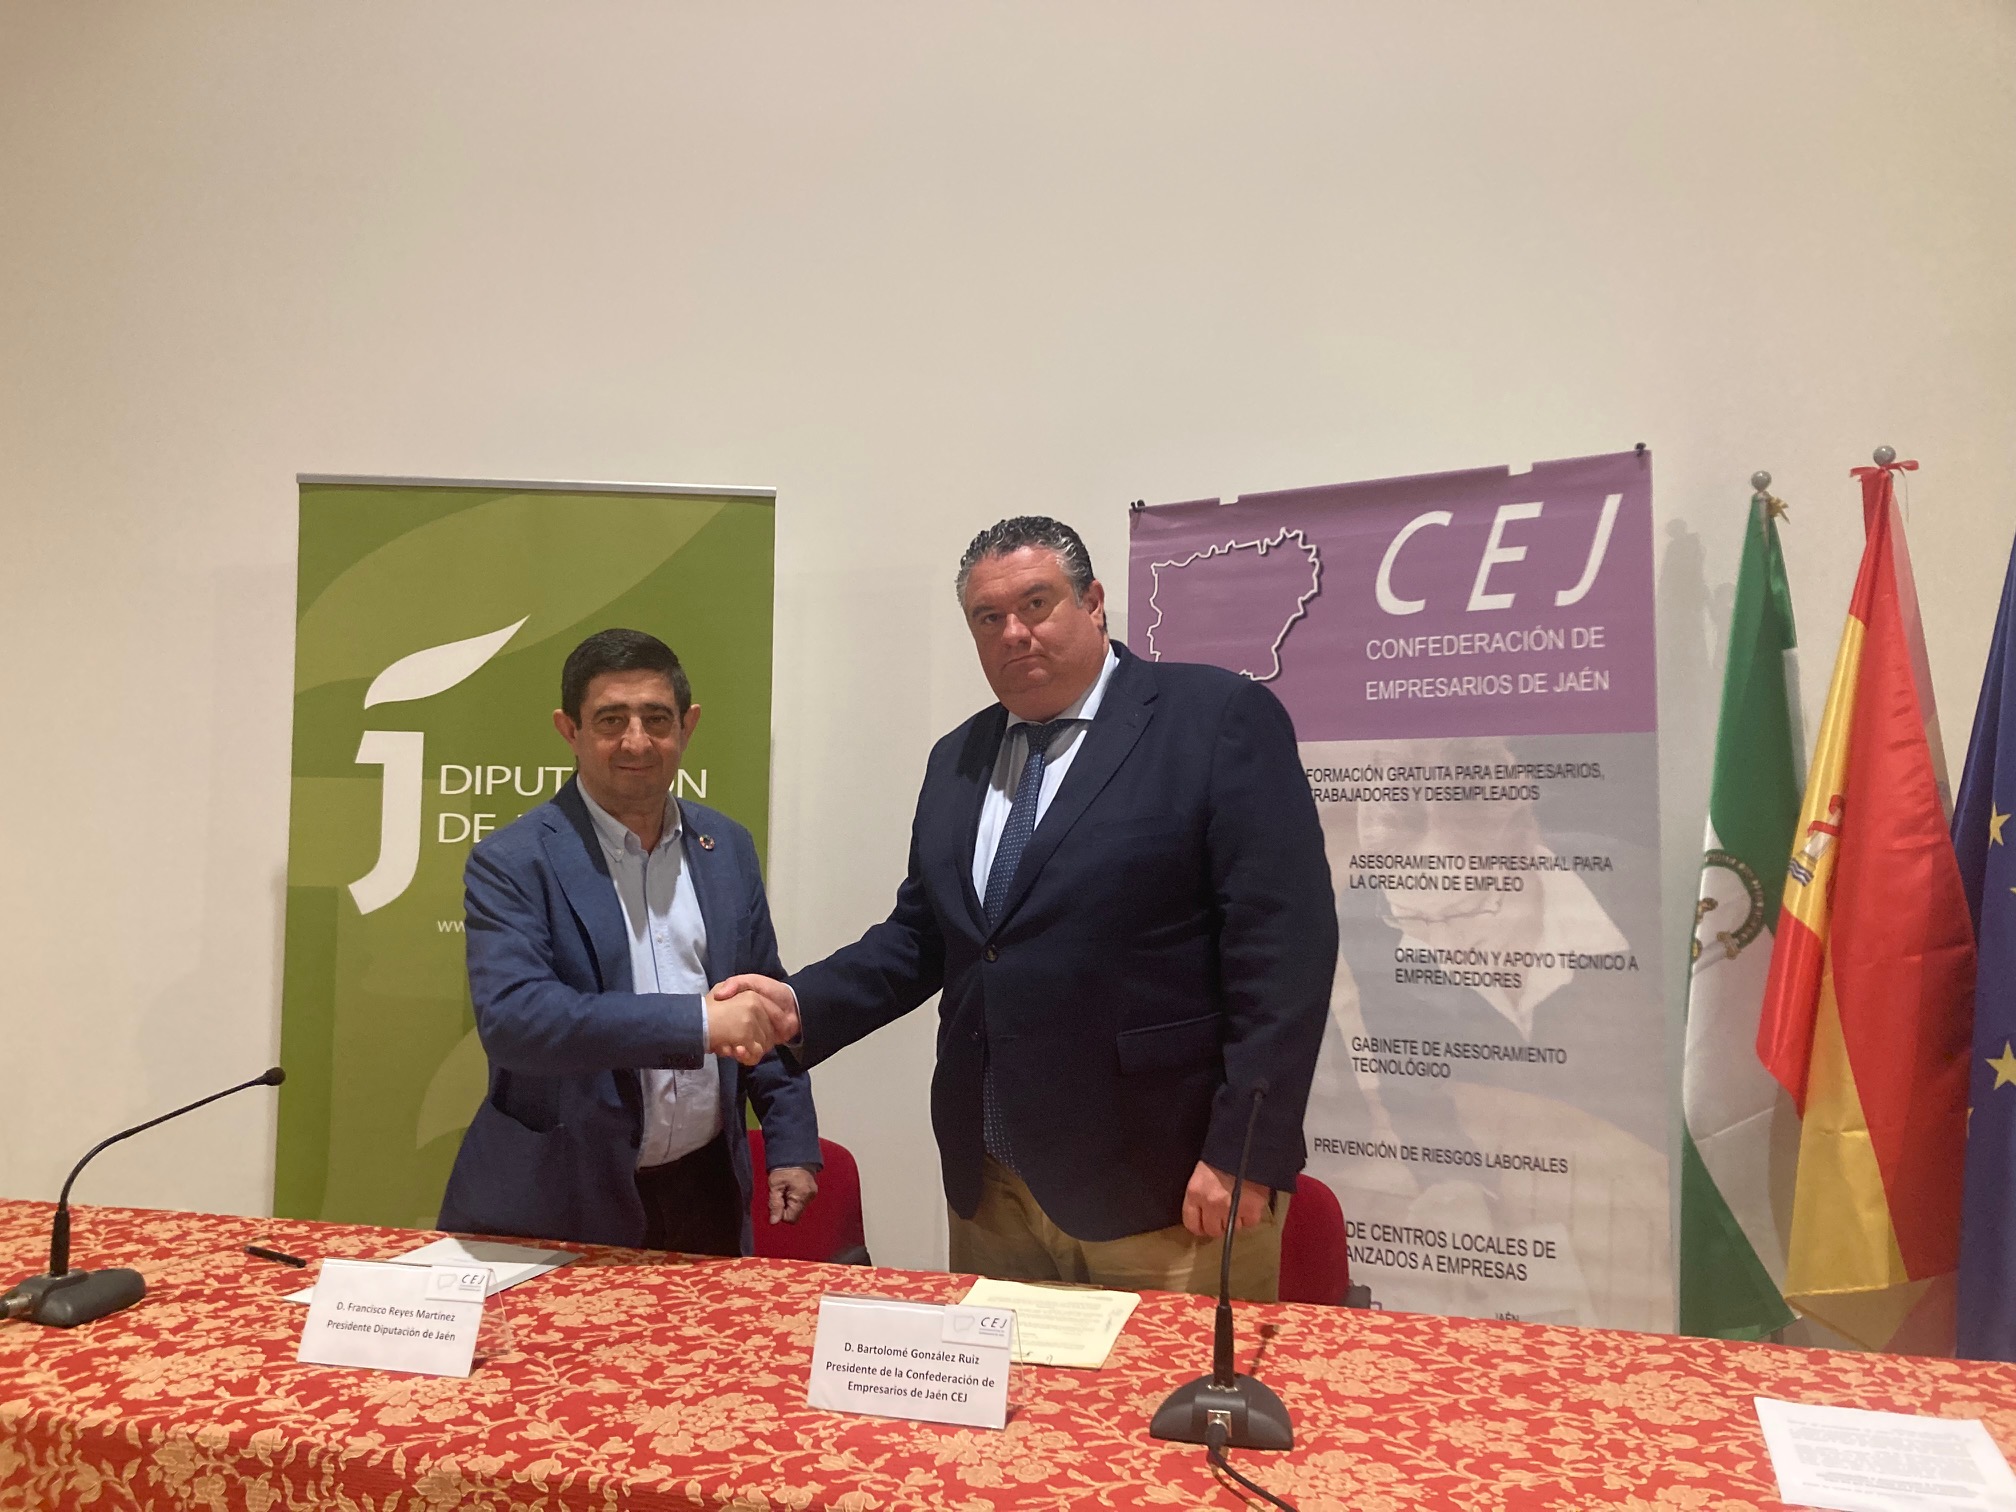 Acuerdo de la Diputación y la CEJ para impulsar la economía circular mediante el proyecto ‘Jaén Simbiosis Industrial’